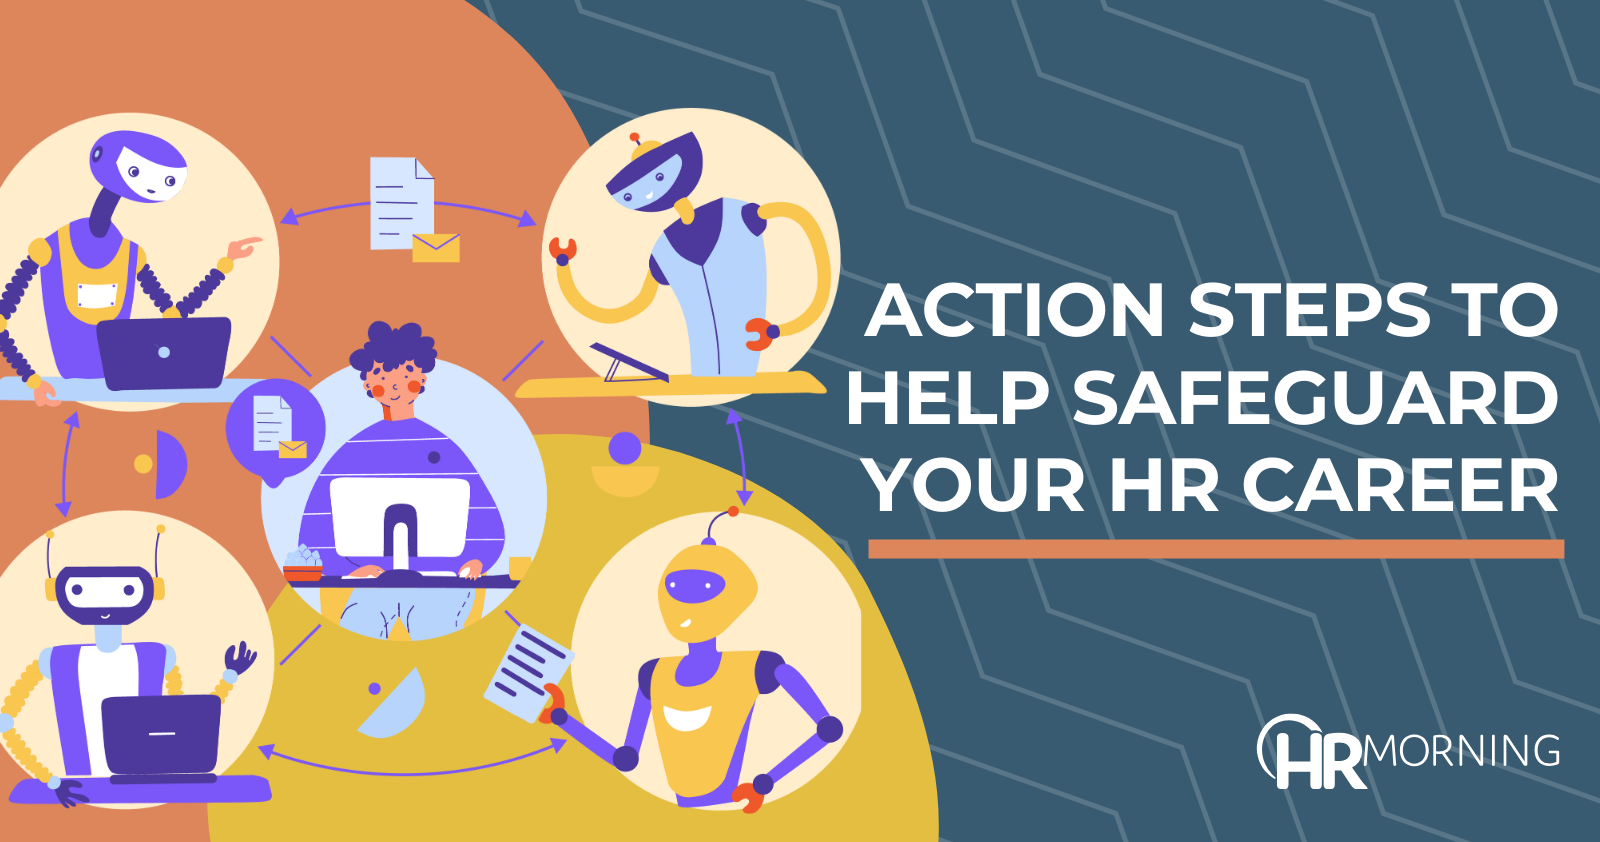 Action-steps-safeguard-HR-career